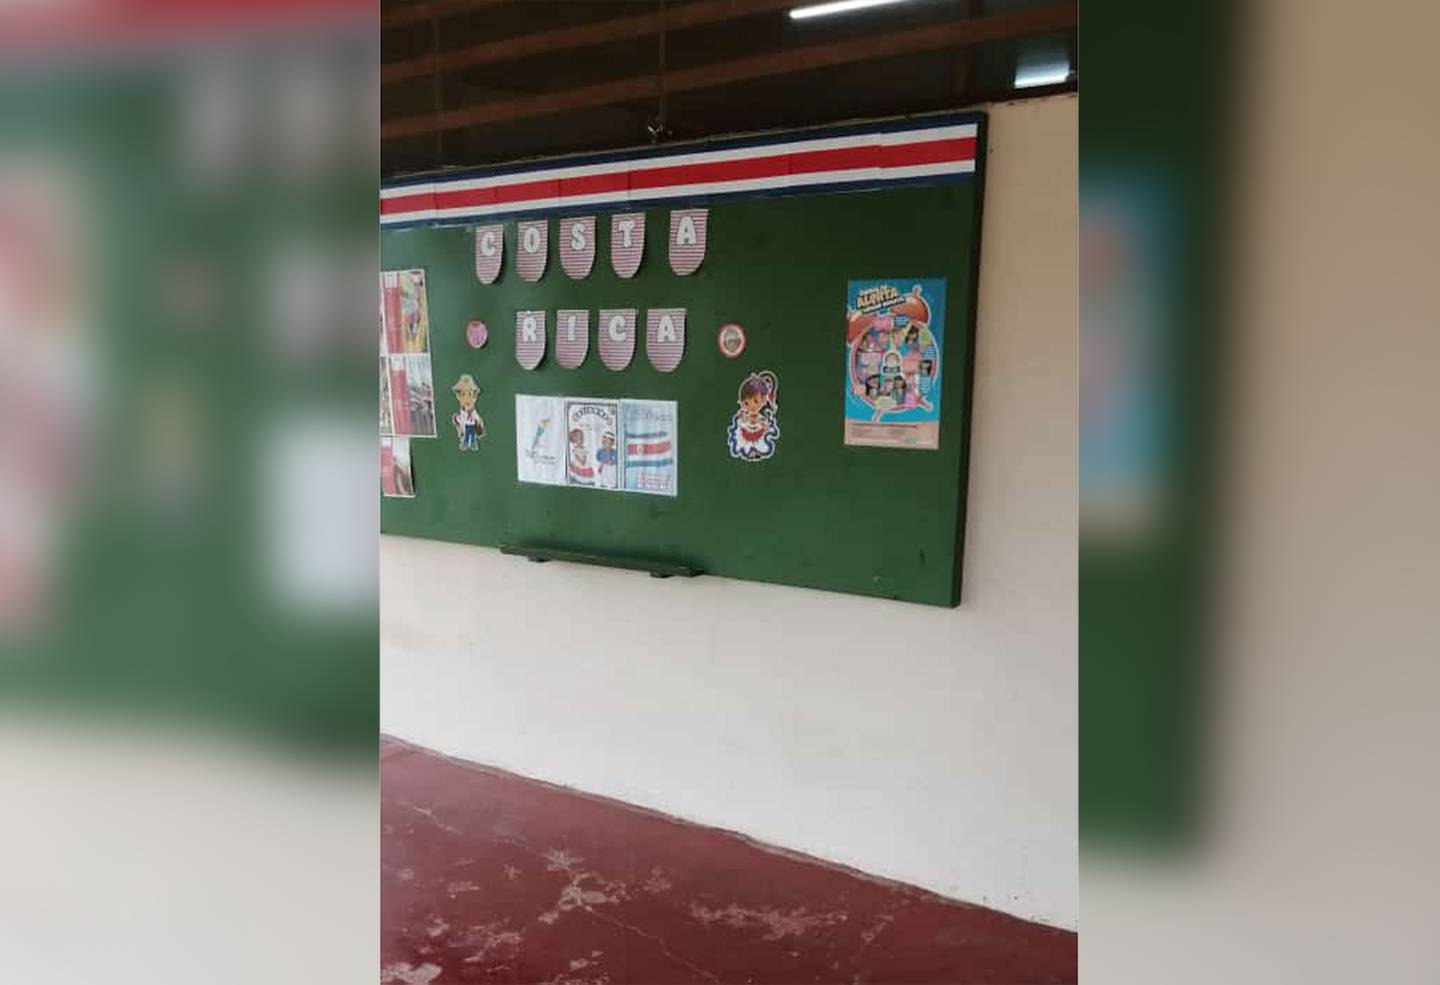 La escuela Chaparrón de Pital, en San Carlos, descubrió que el jueves 21 de setiembre, fueron robados varios de sus bienes. Foto: Chinchilla, corresponsal GN.